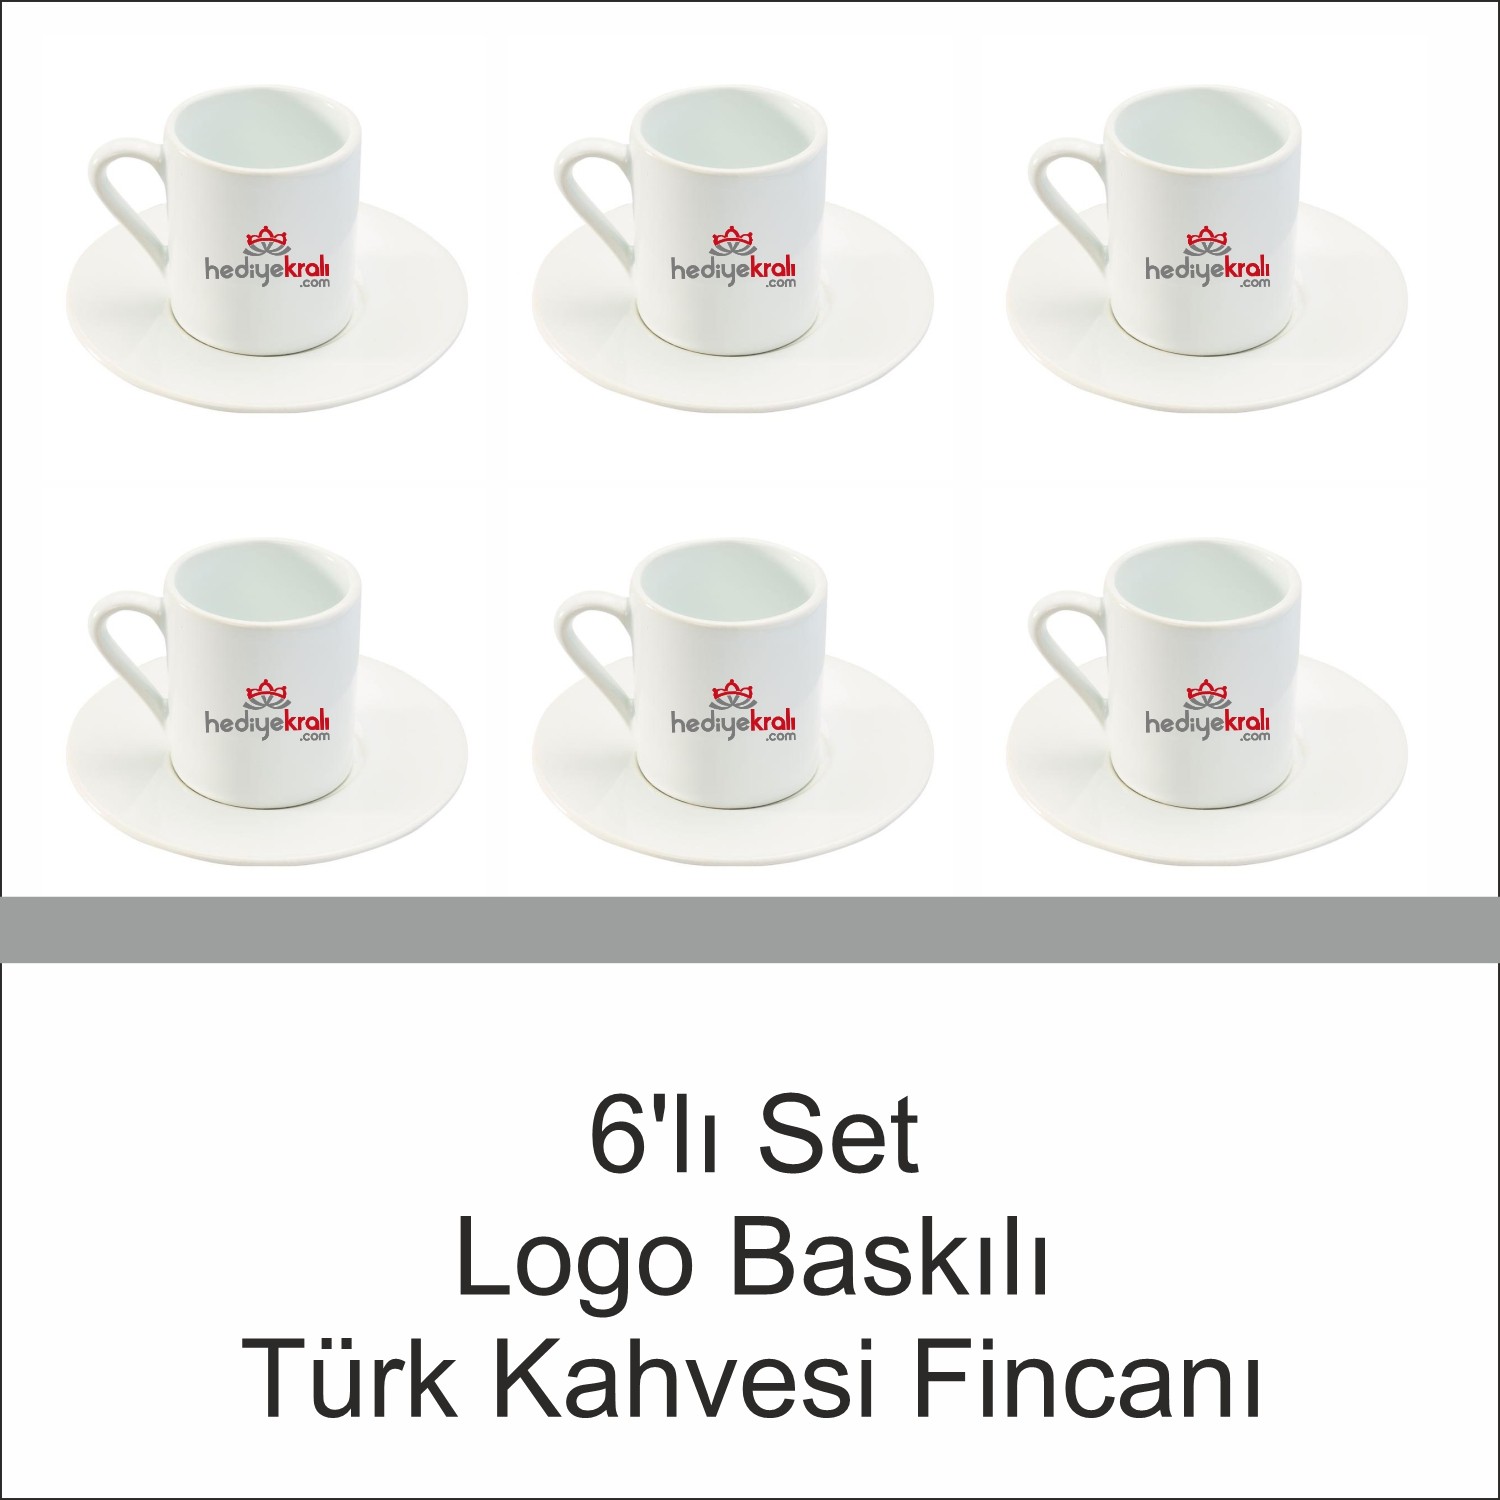 Logo Baskılı Türk Kahvesi Fincan Seti 6'lı Set 